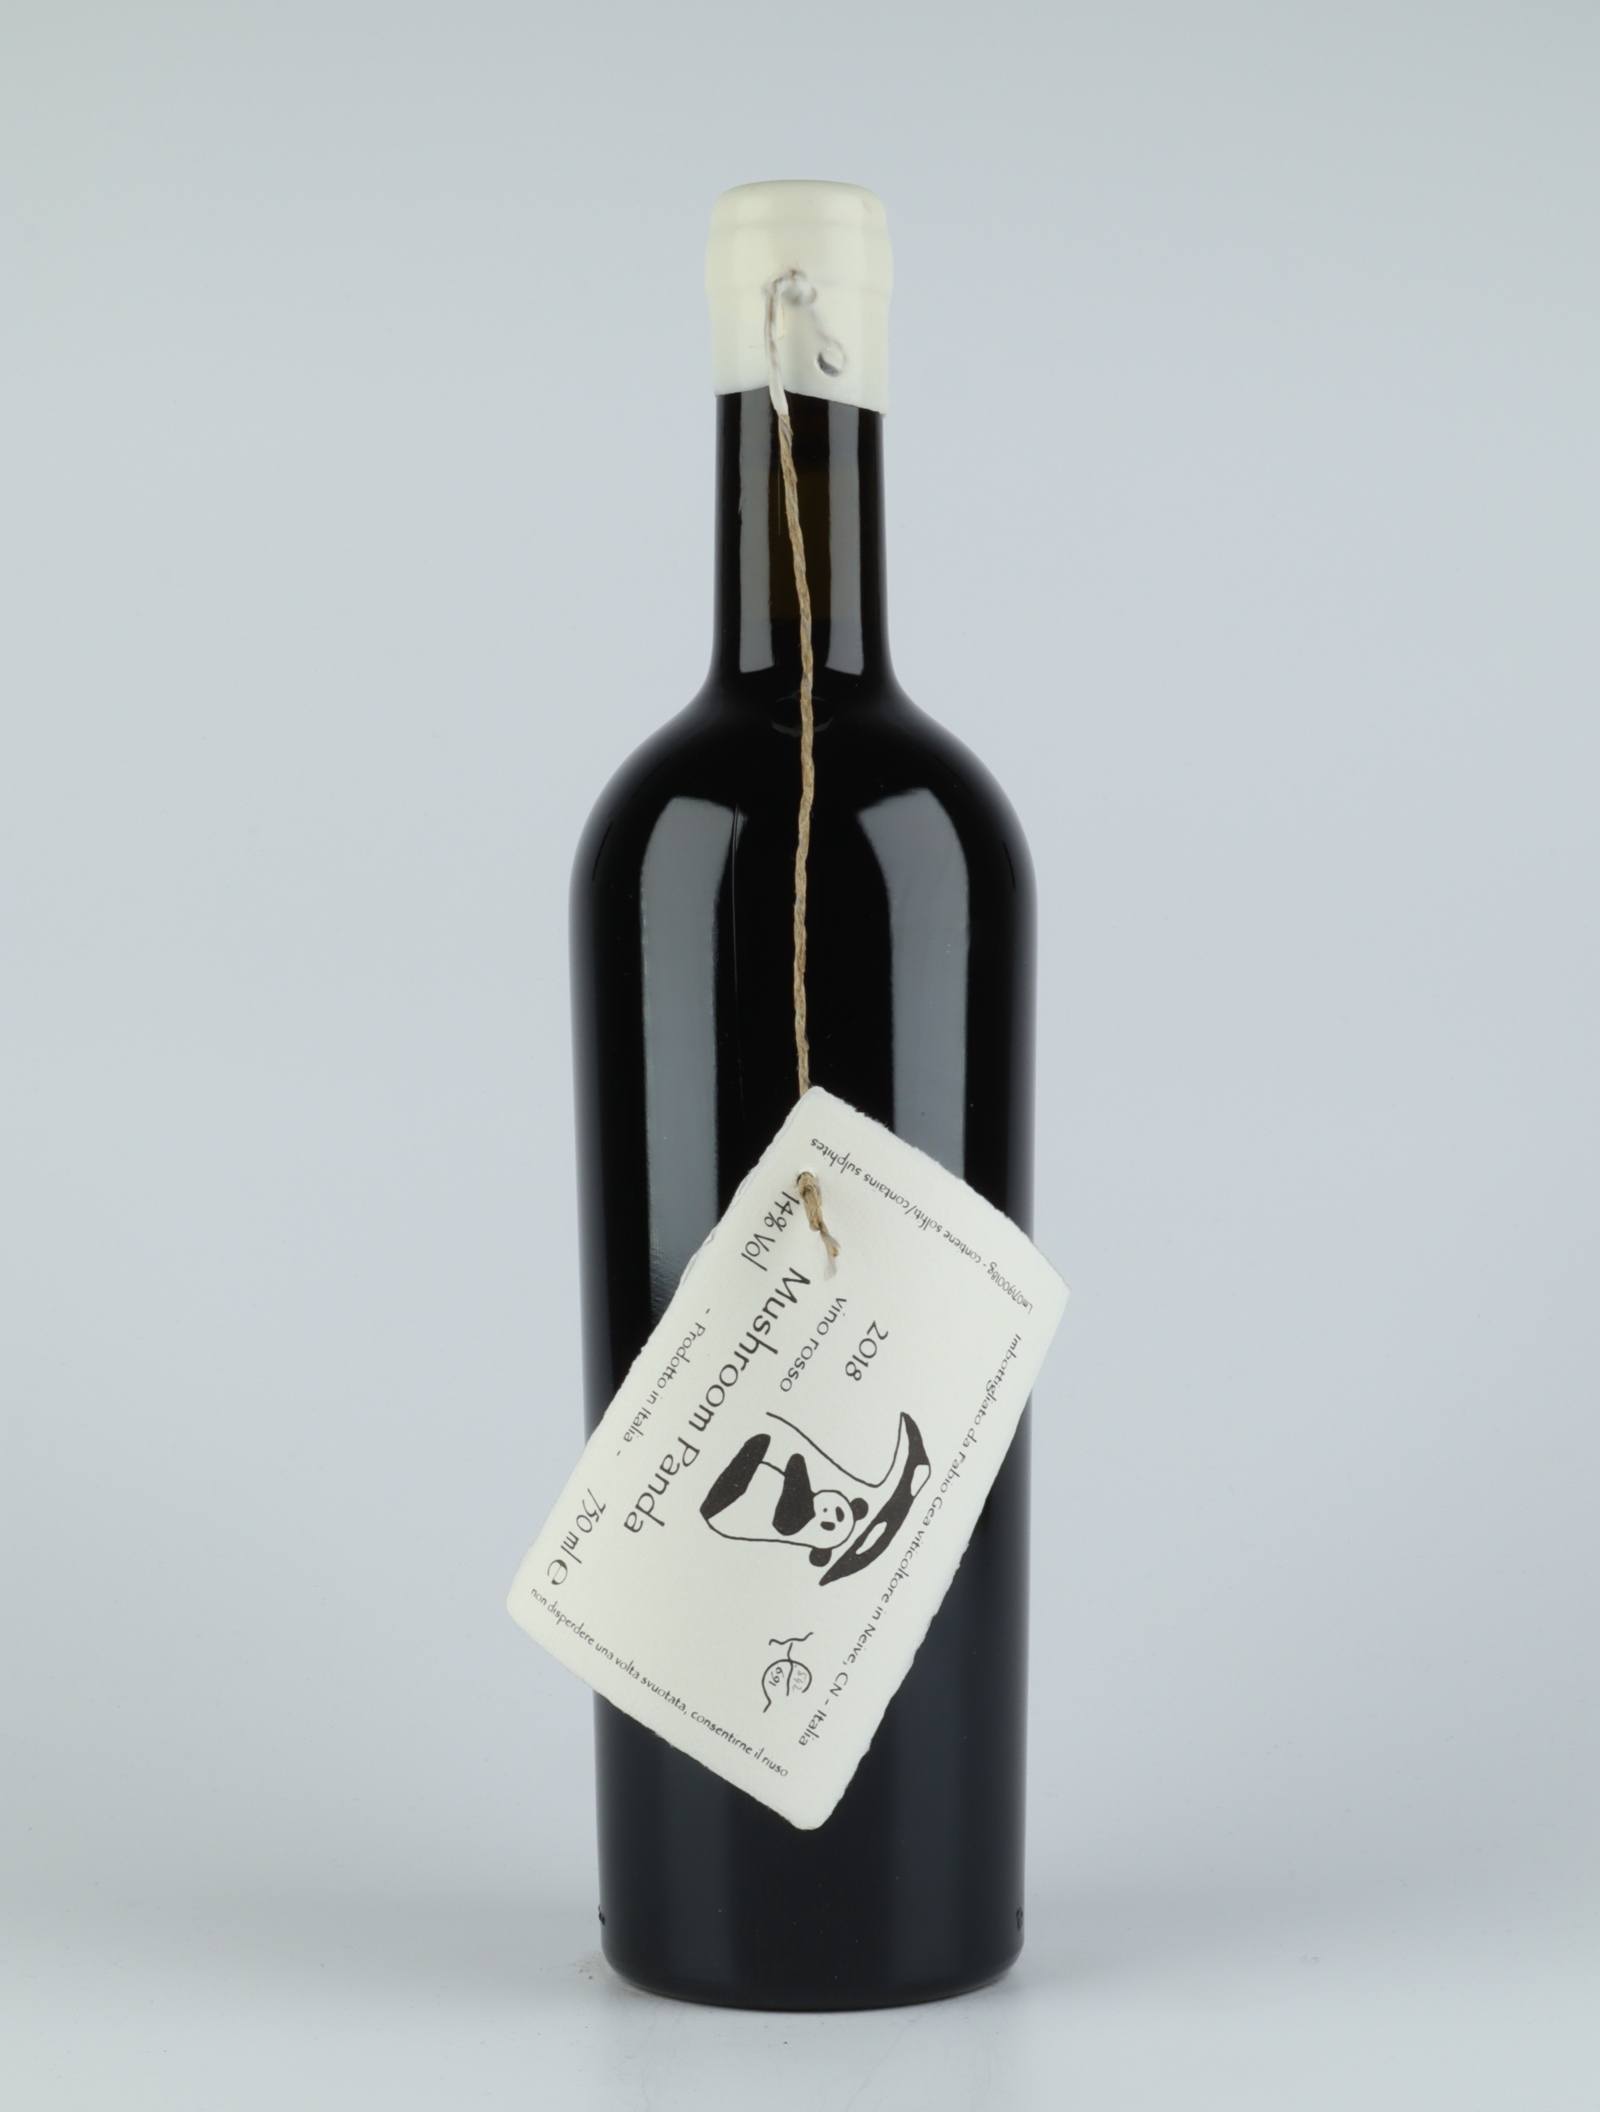 A bottle 2018 Mushroom Panda Red wine from Fabio Gea, Piedmont in Italy